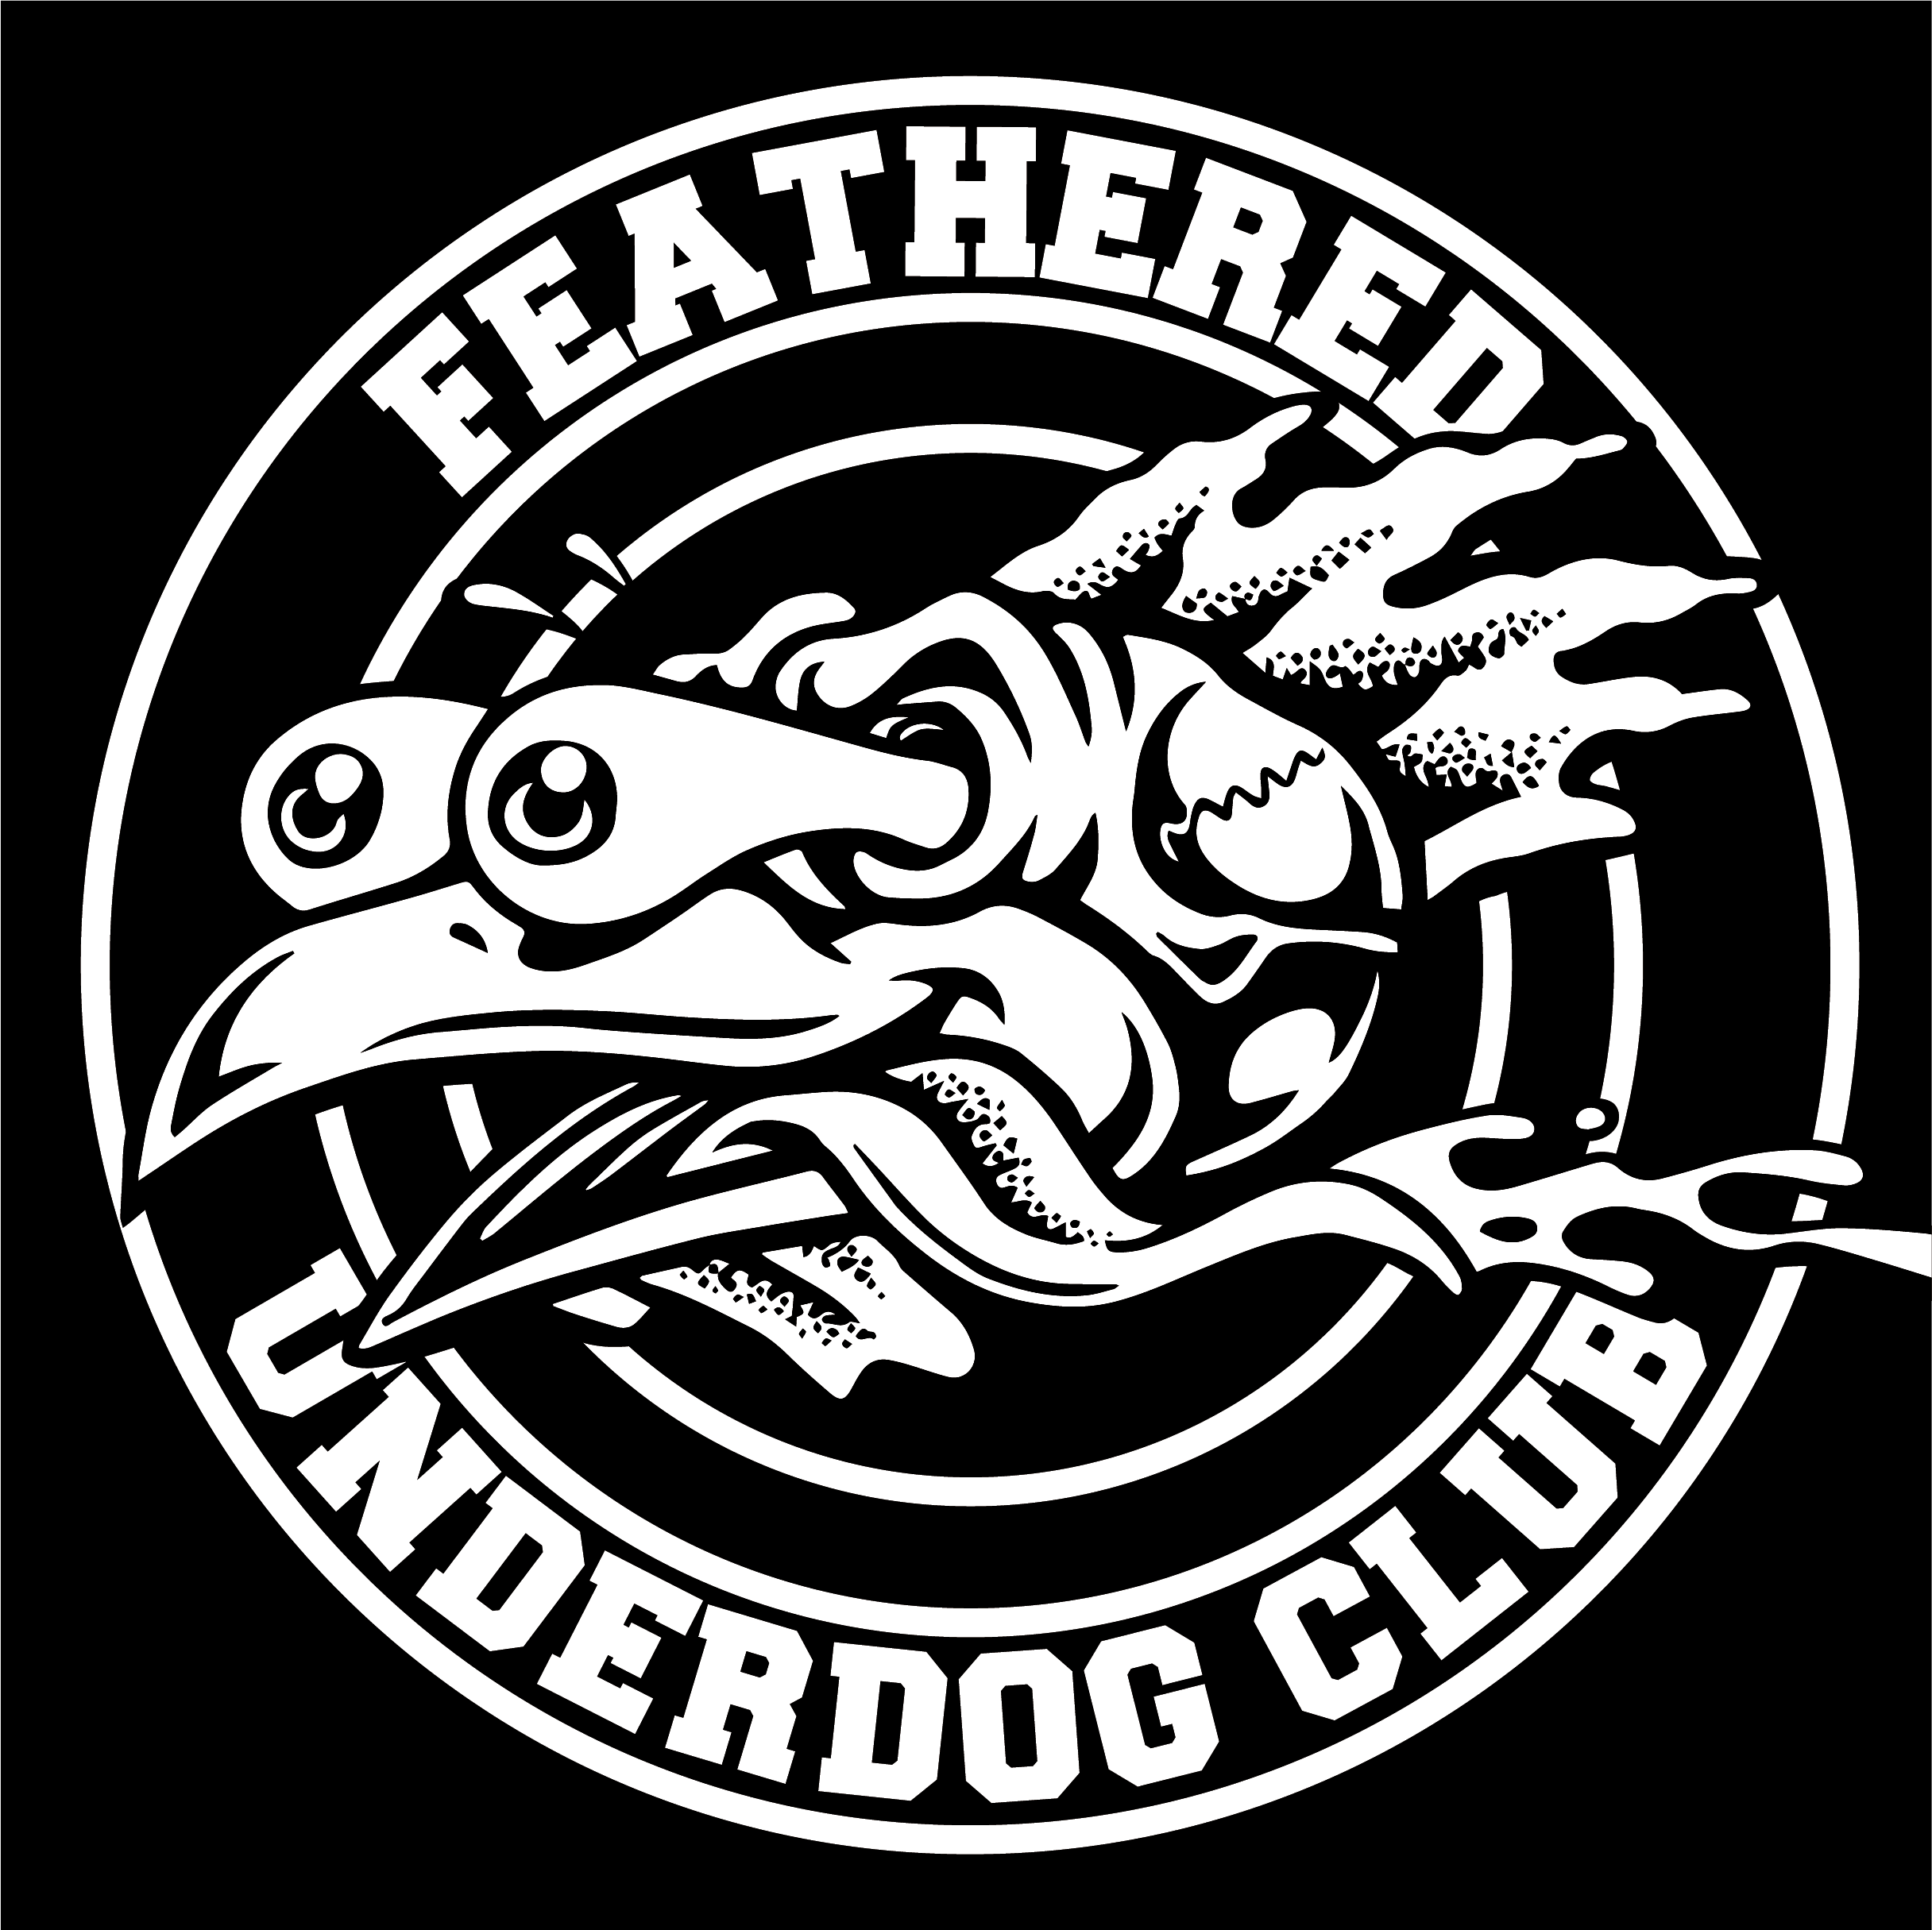 Feathered Underdog Club